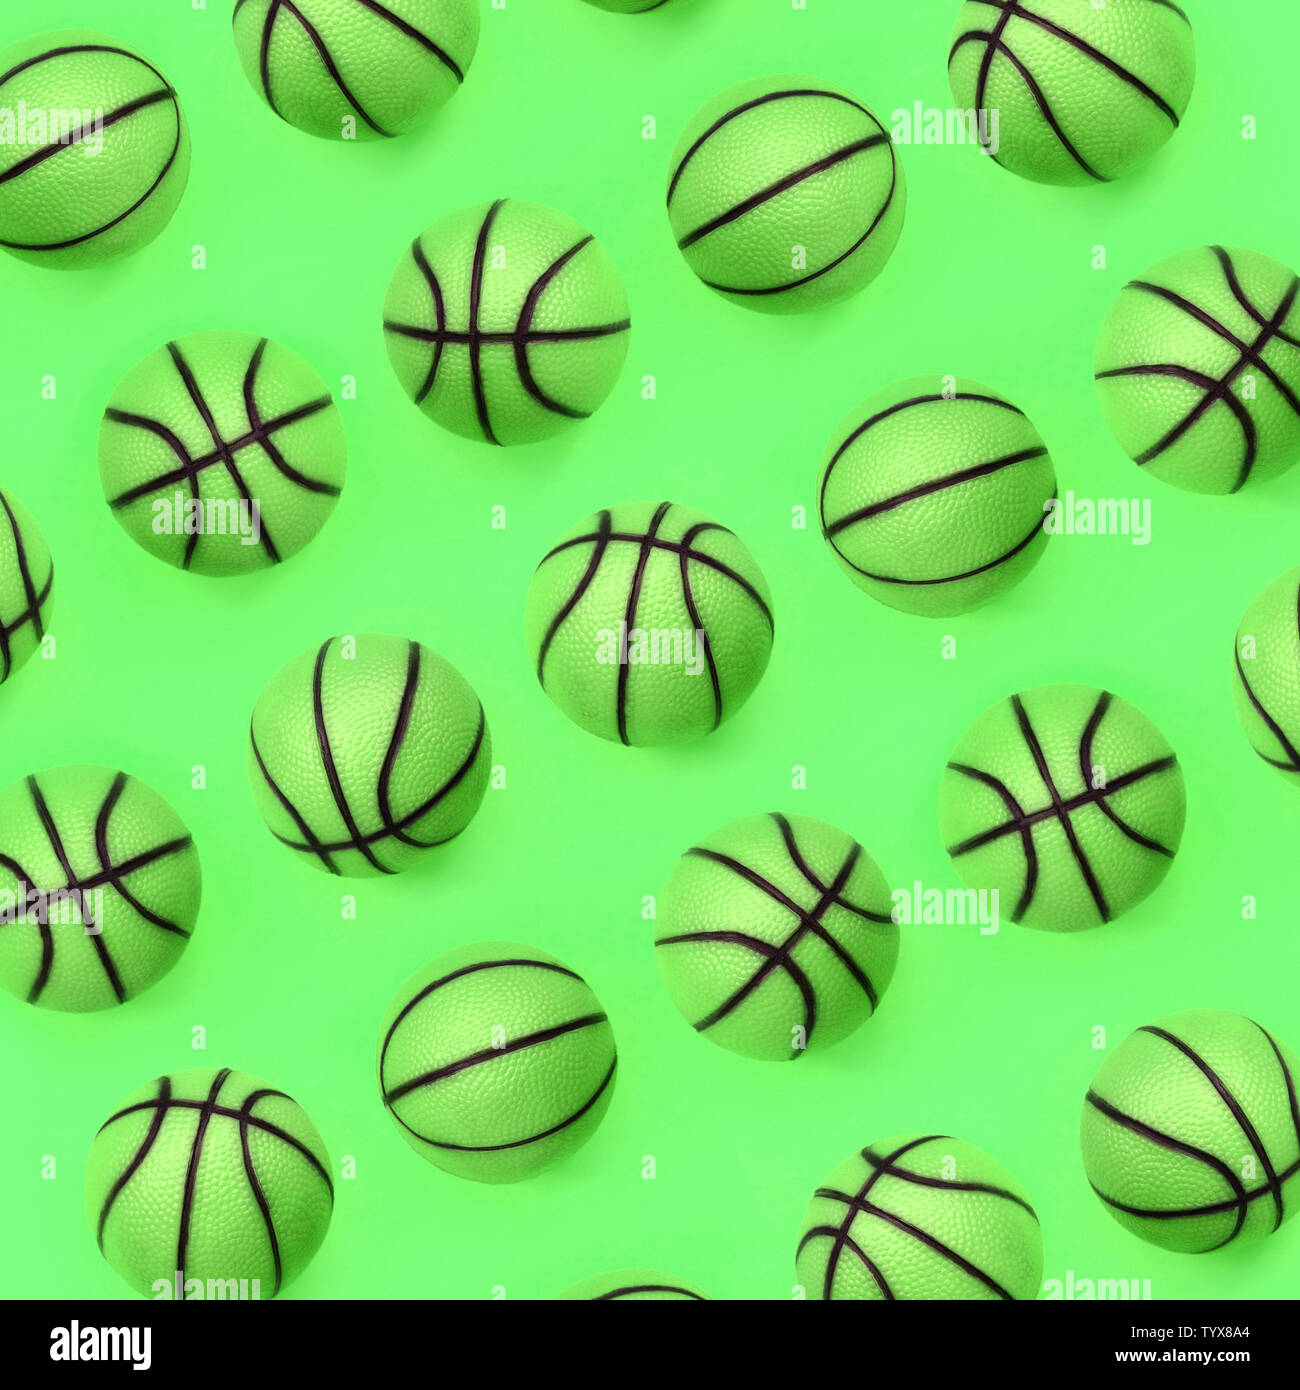 Beaucoup de petites boules vertes pour le sport de basket-ball jeu réside  sur la texture de fond de couleur vert pastel de la mode en papier concept  minimal Photo Stock - Alamy